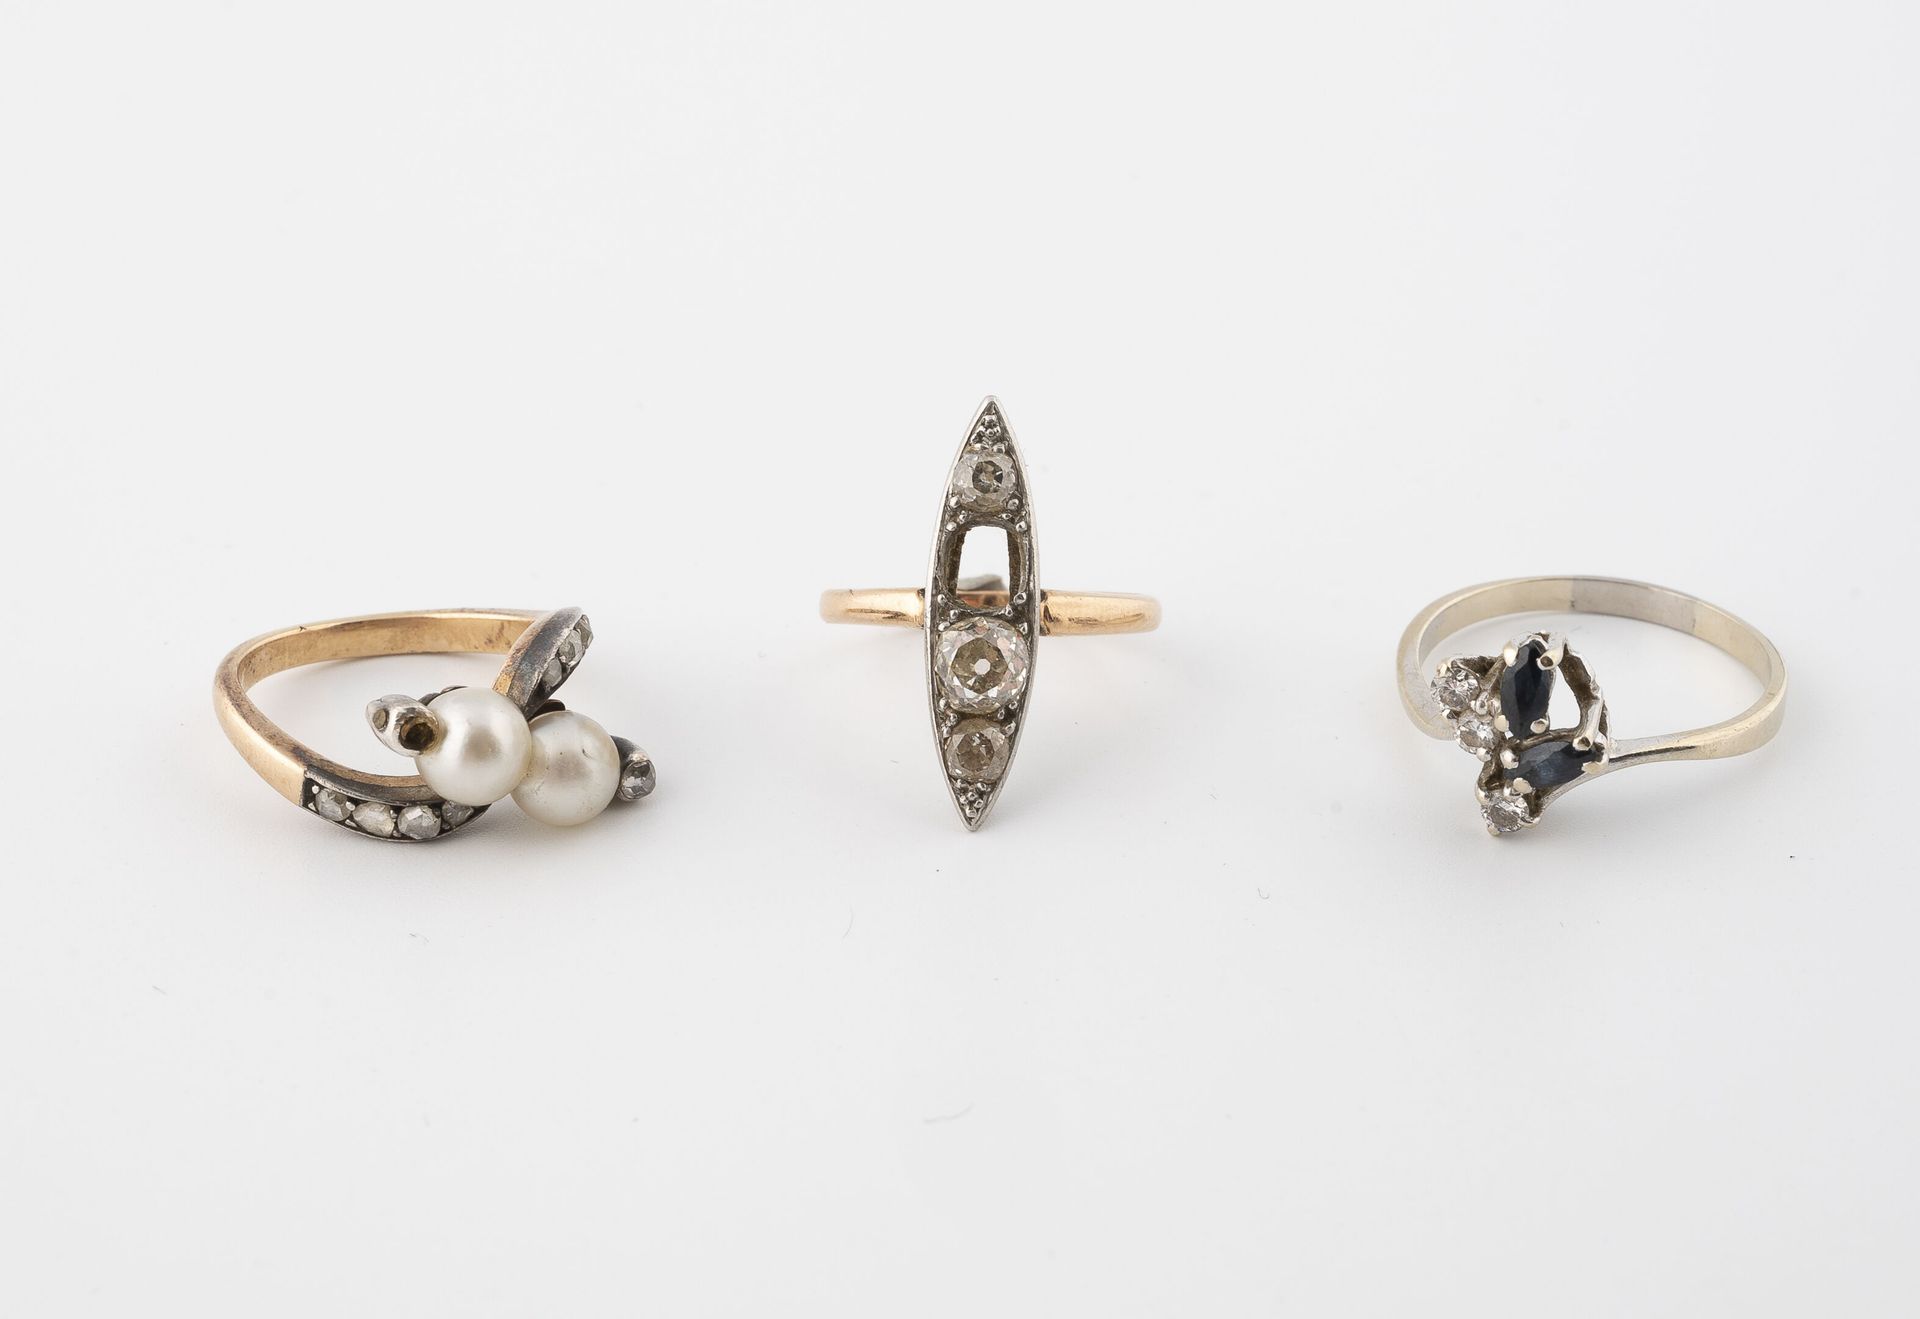 Null Lote de tres anillos:
-Uno en oro blanco (750) engastado con zafiros y pequ&hellip;